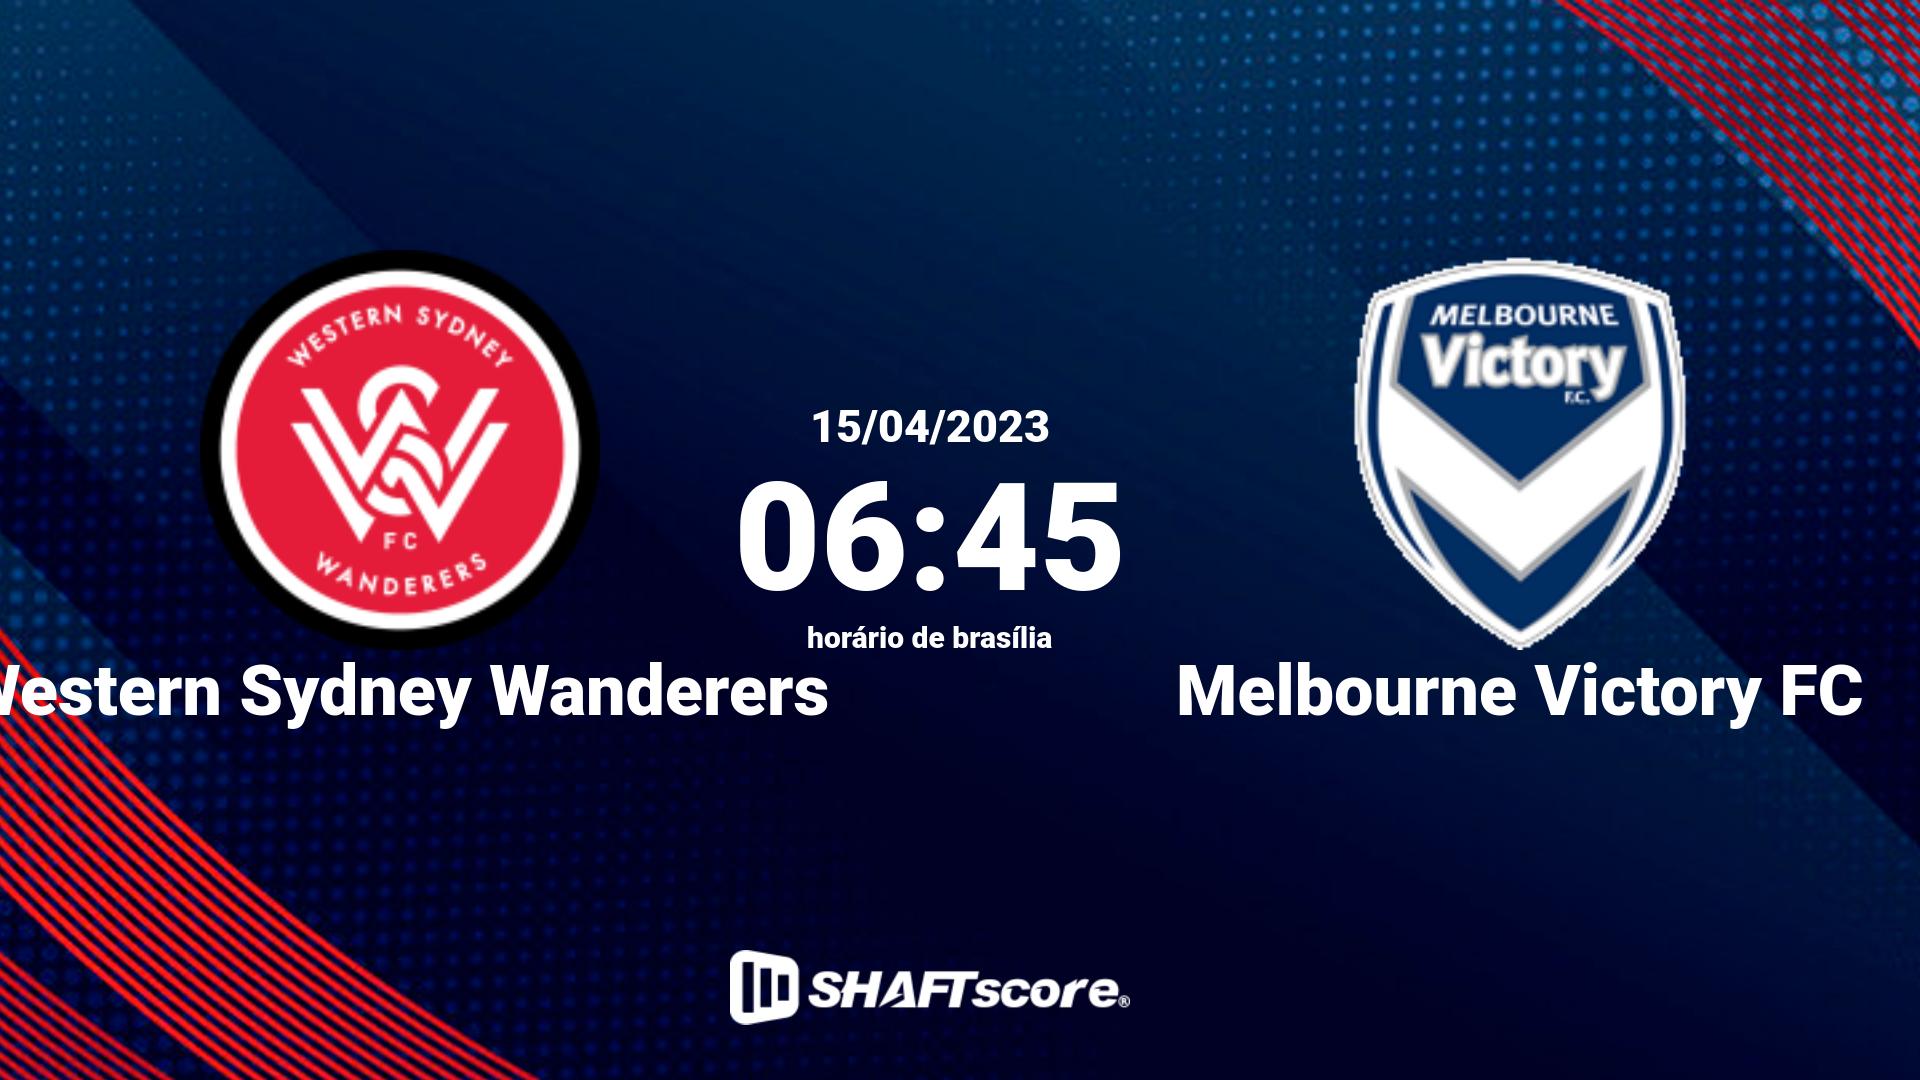 Estatísticas do jogo Western Sydney Wanderers vs Melbourne Victory FC 15.04 06:45